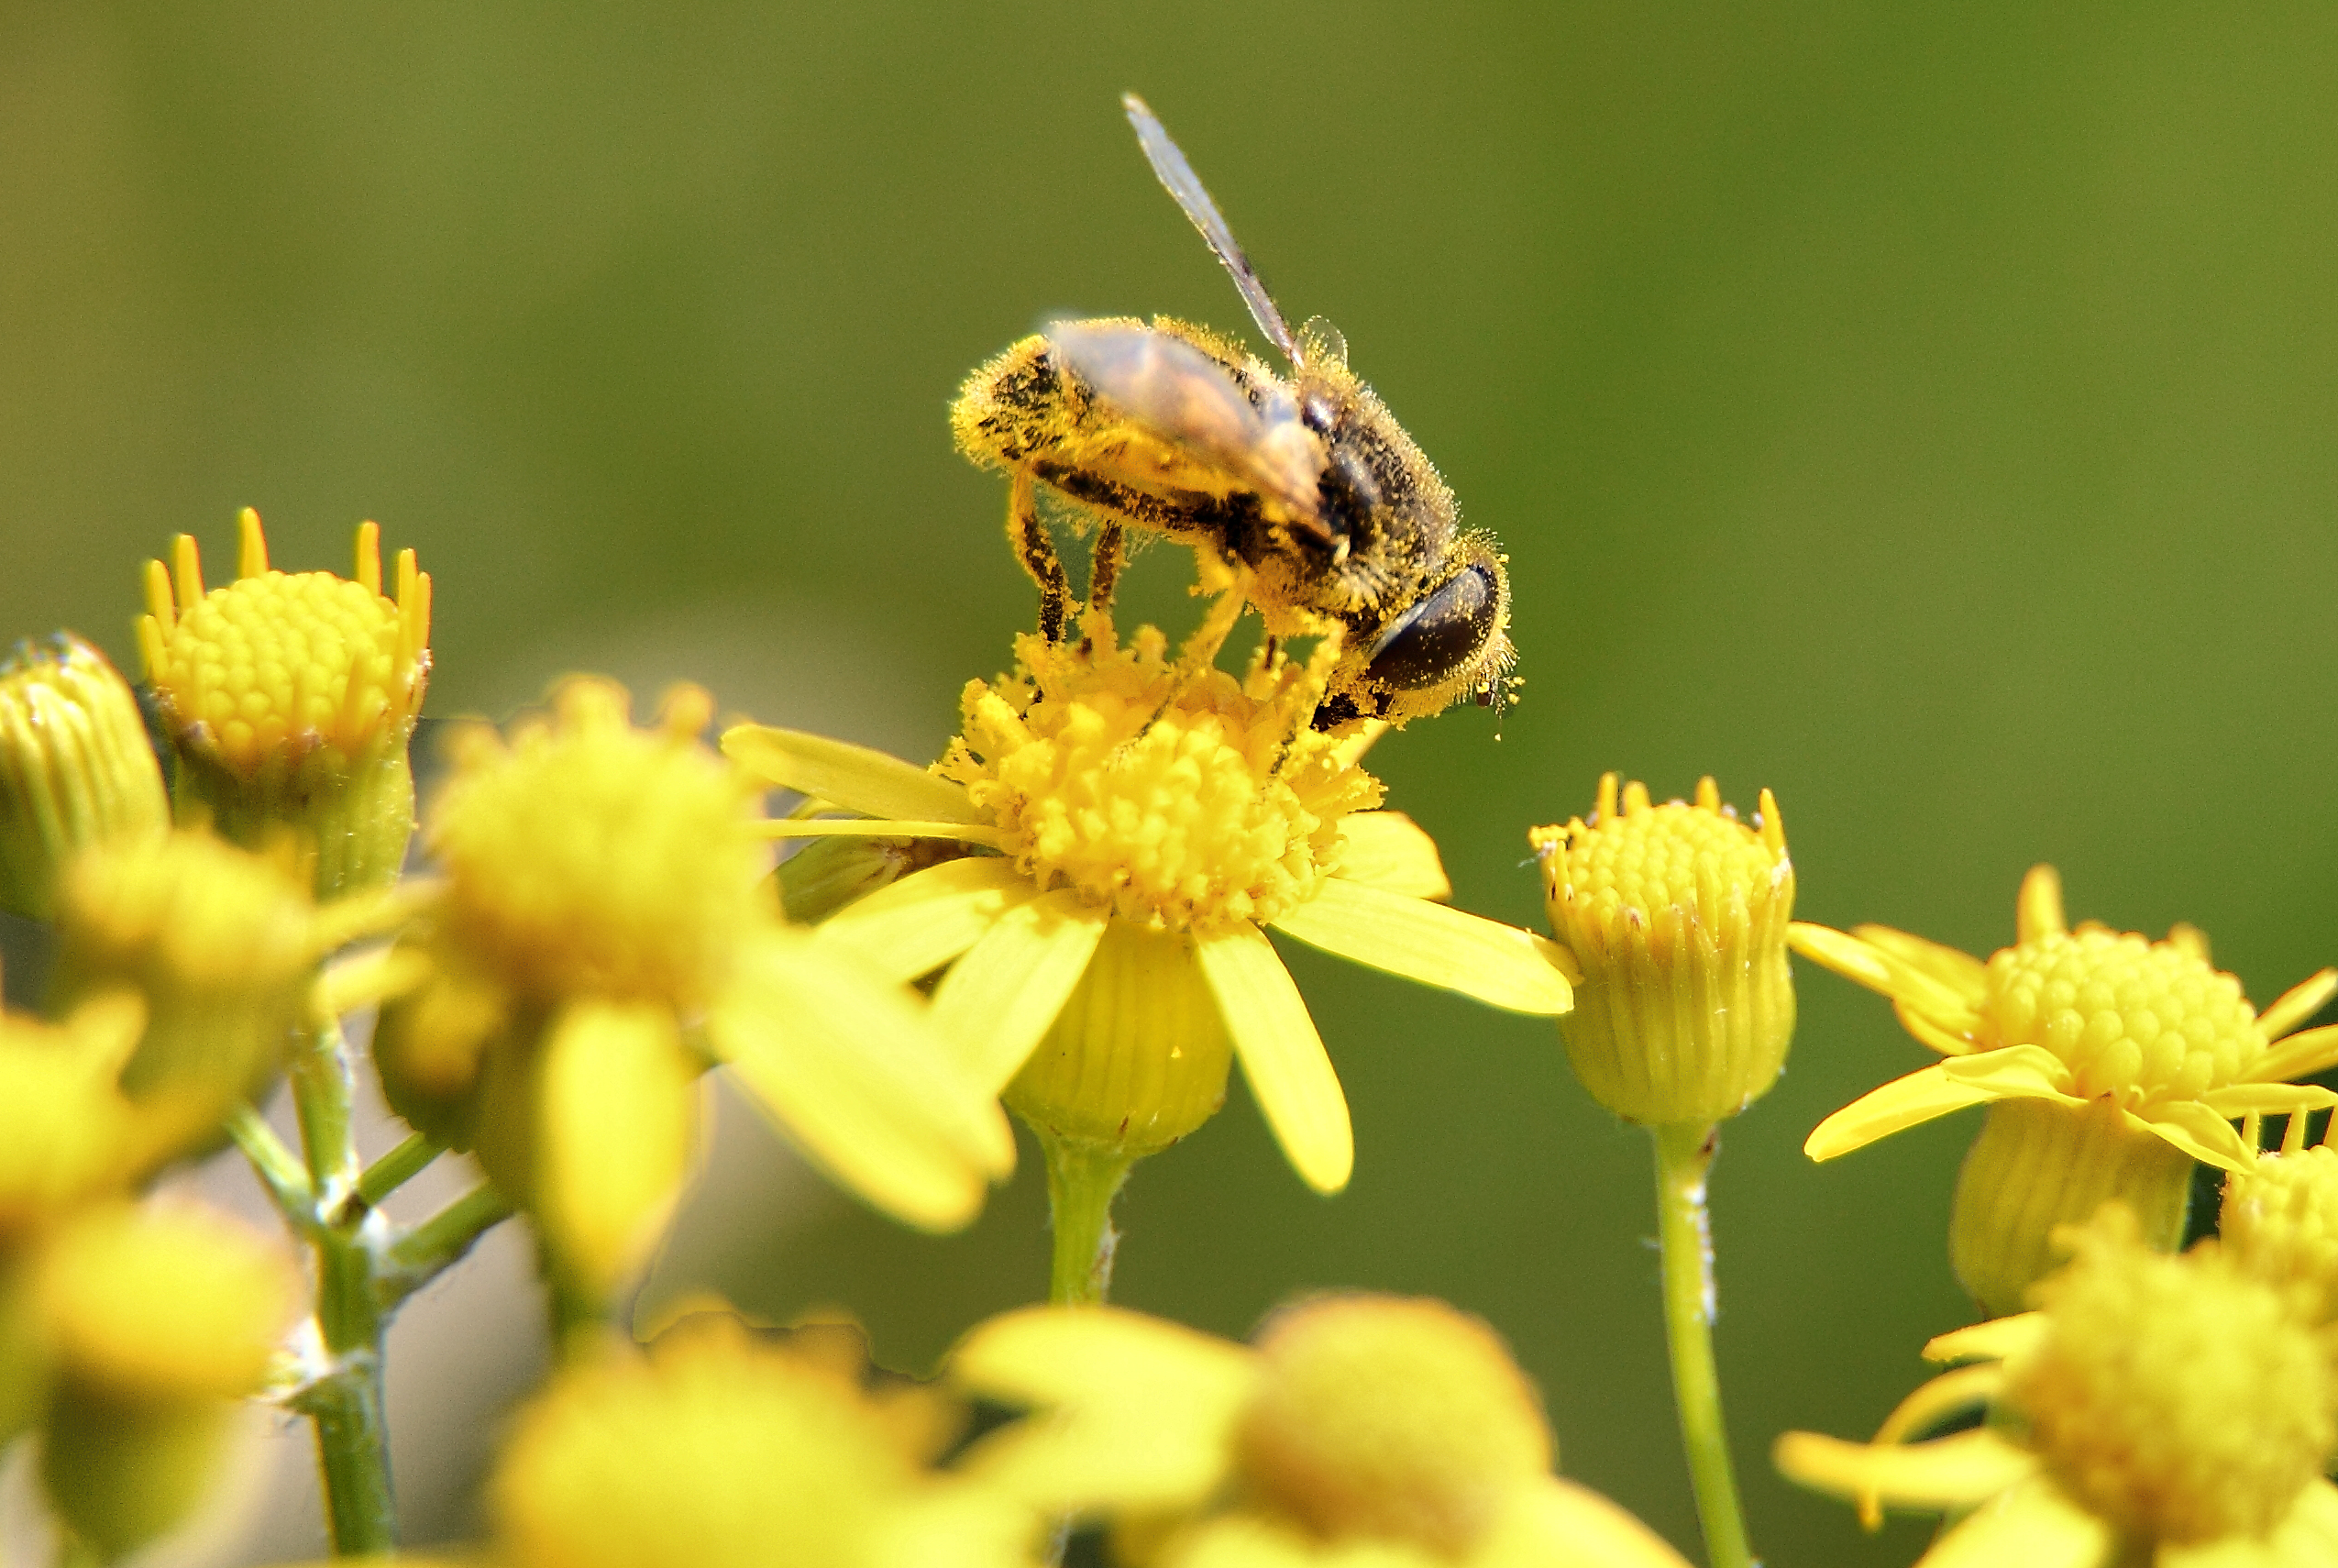 Polen de abeja: 10 increíbles beneficios para la salud.